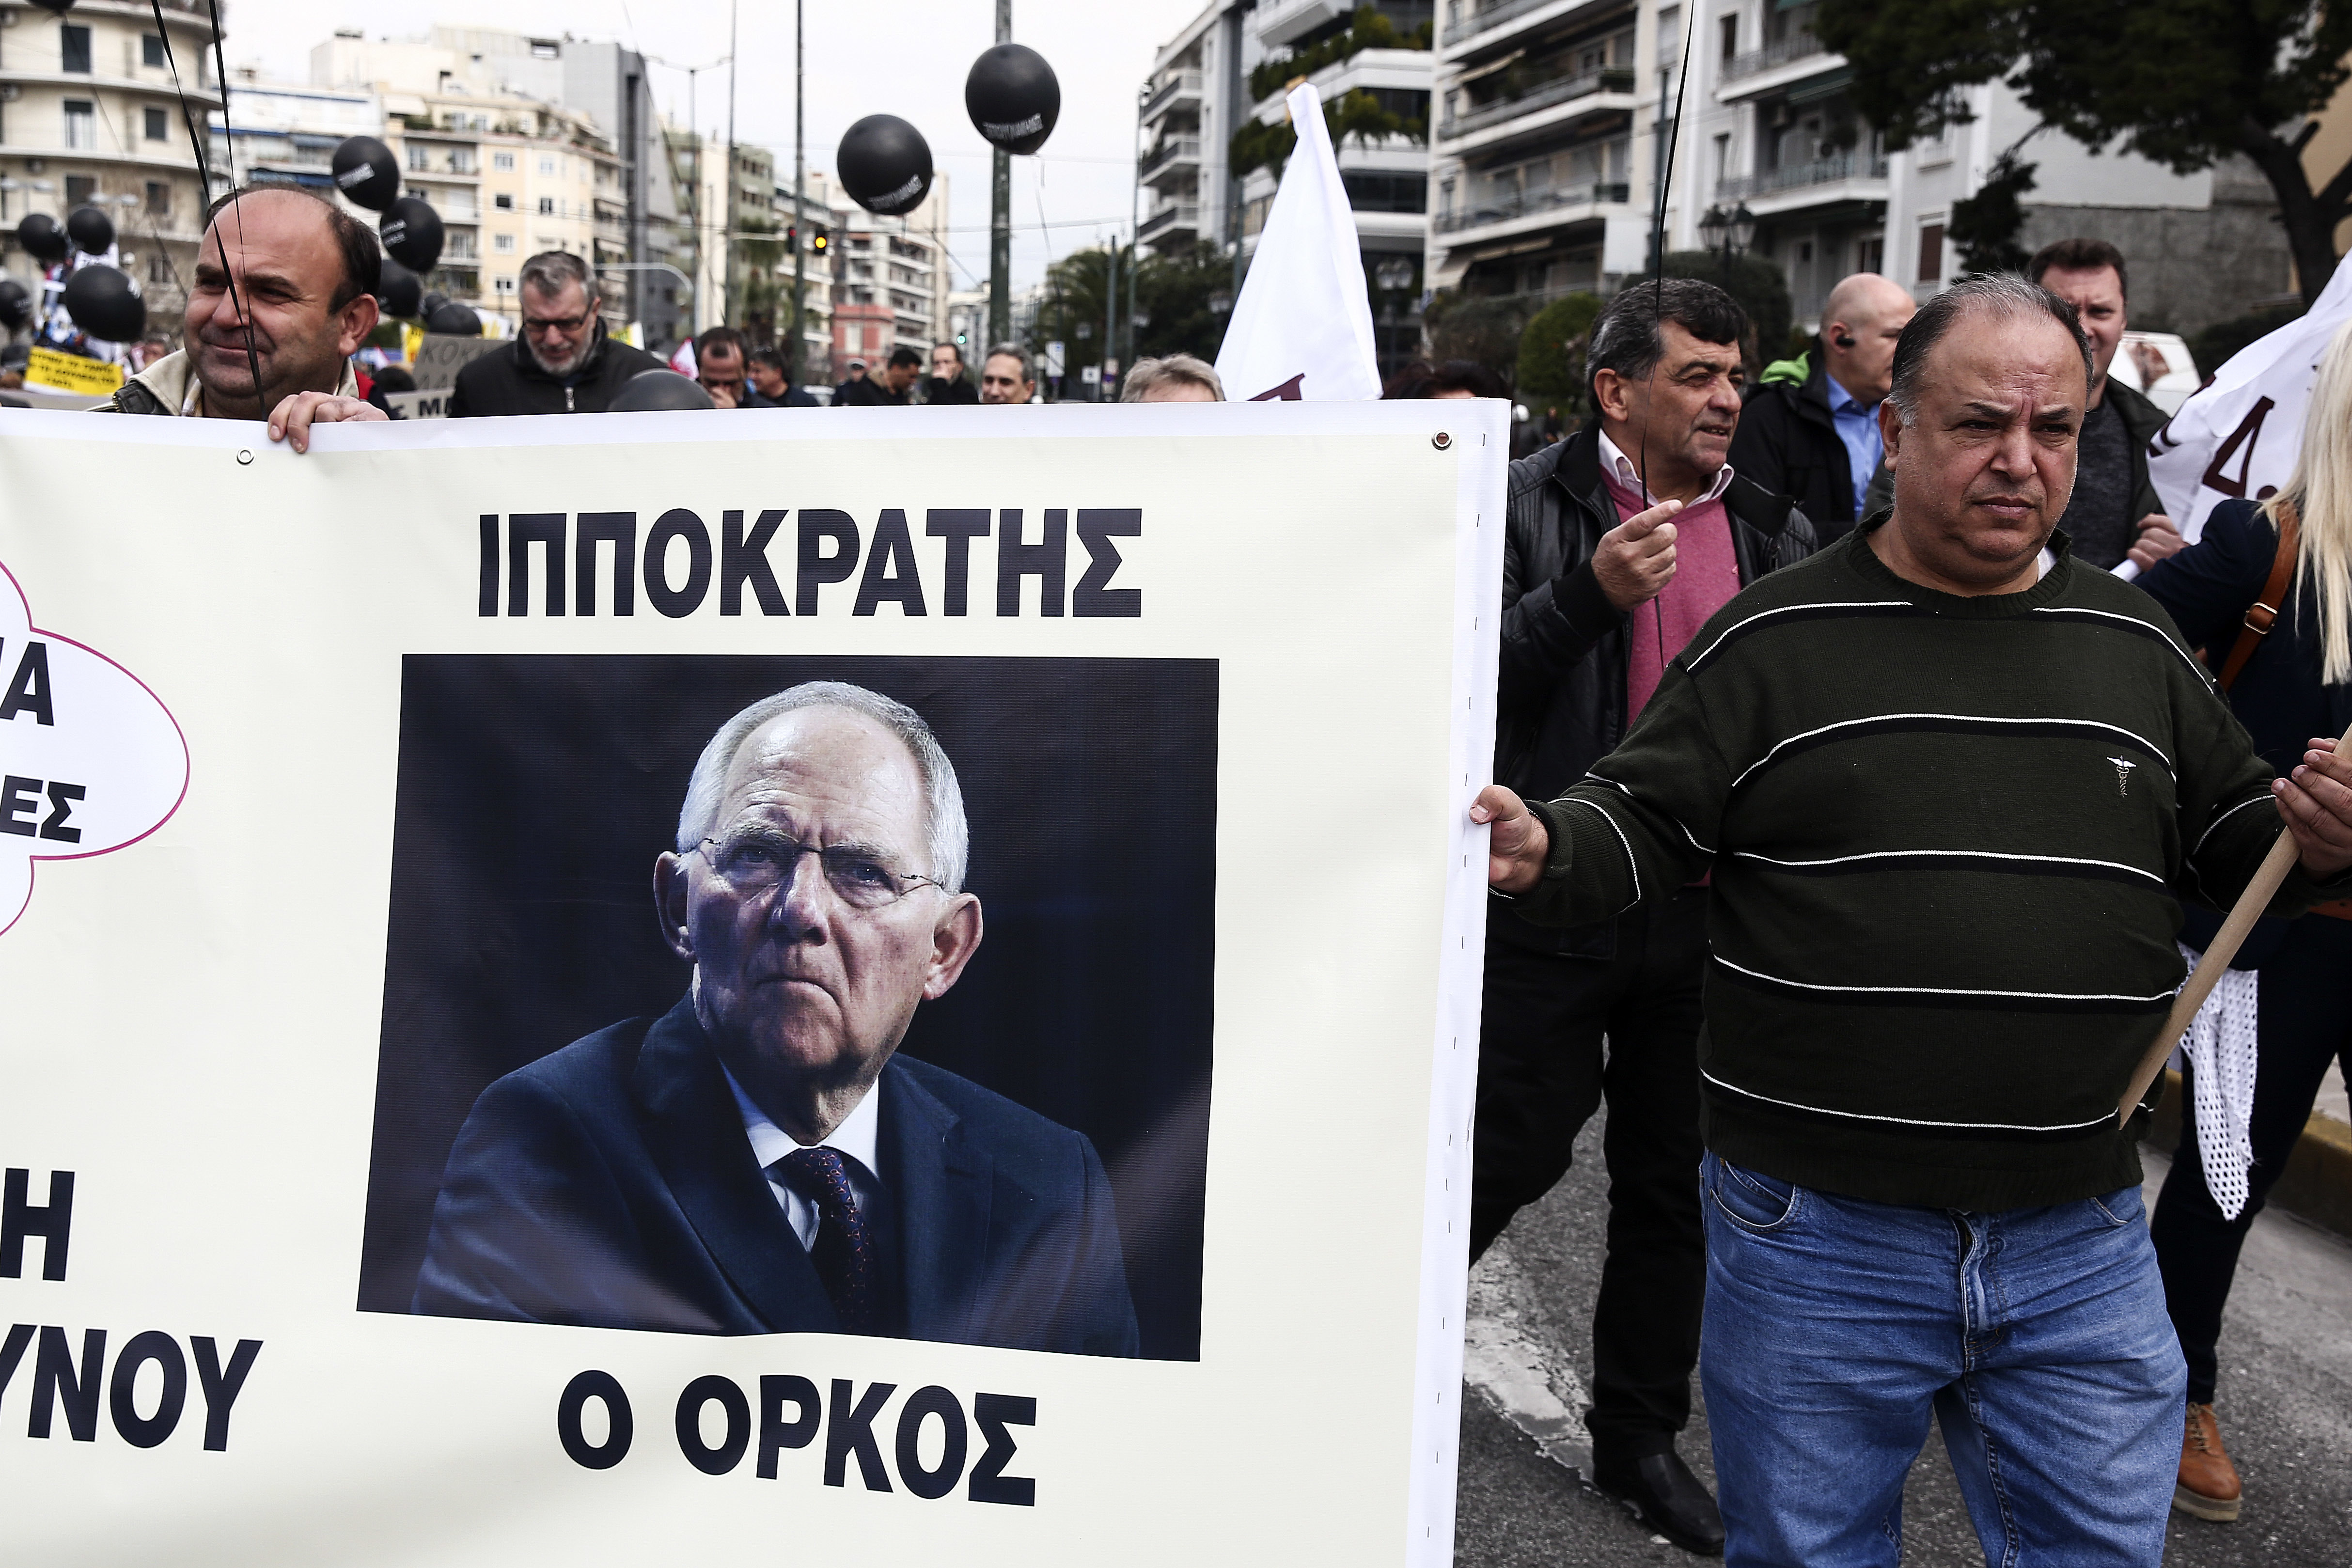 Служители на държавни болници протестират против икономиите с плакат с лика на Шойбле и надпис ”Хипократoвата клетва”